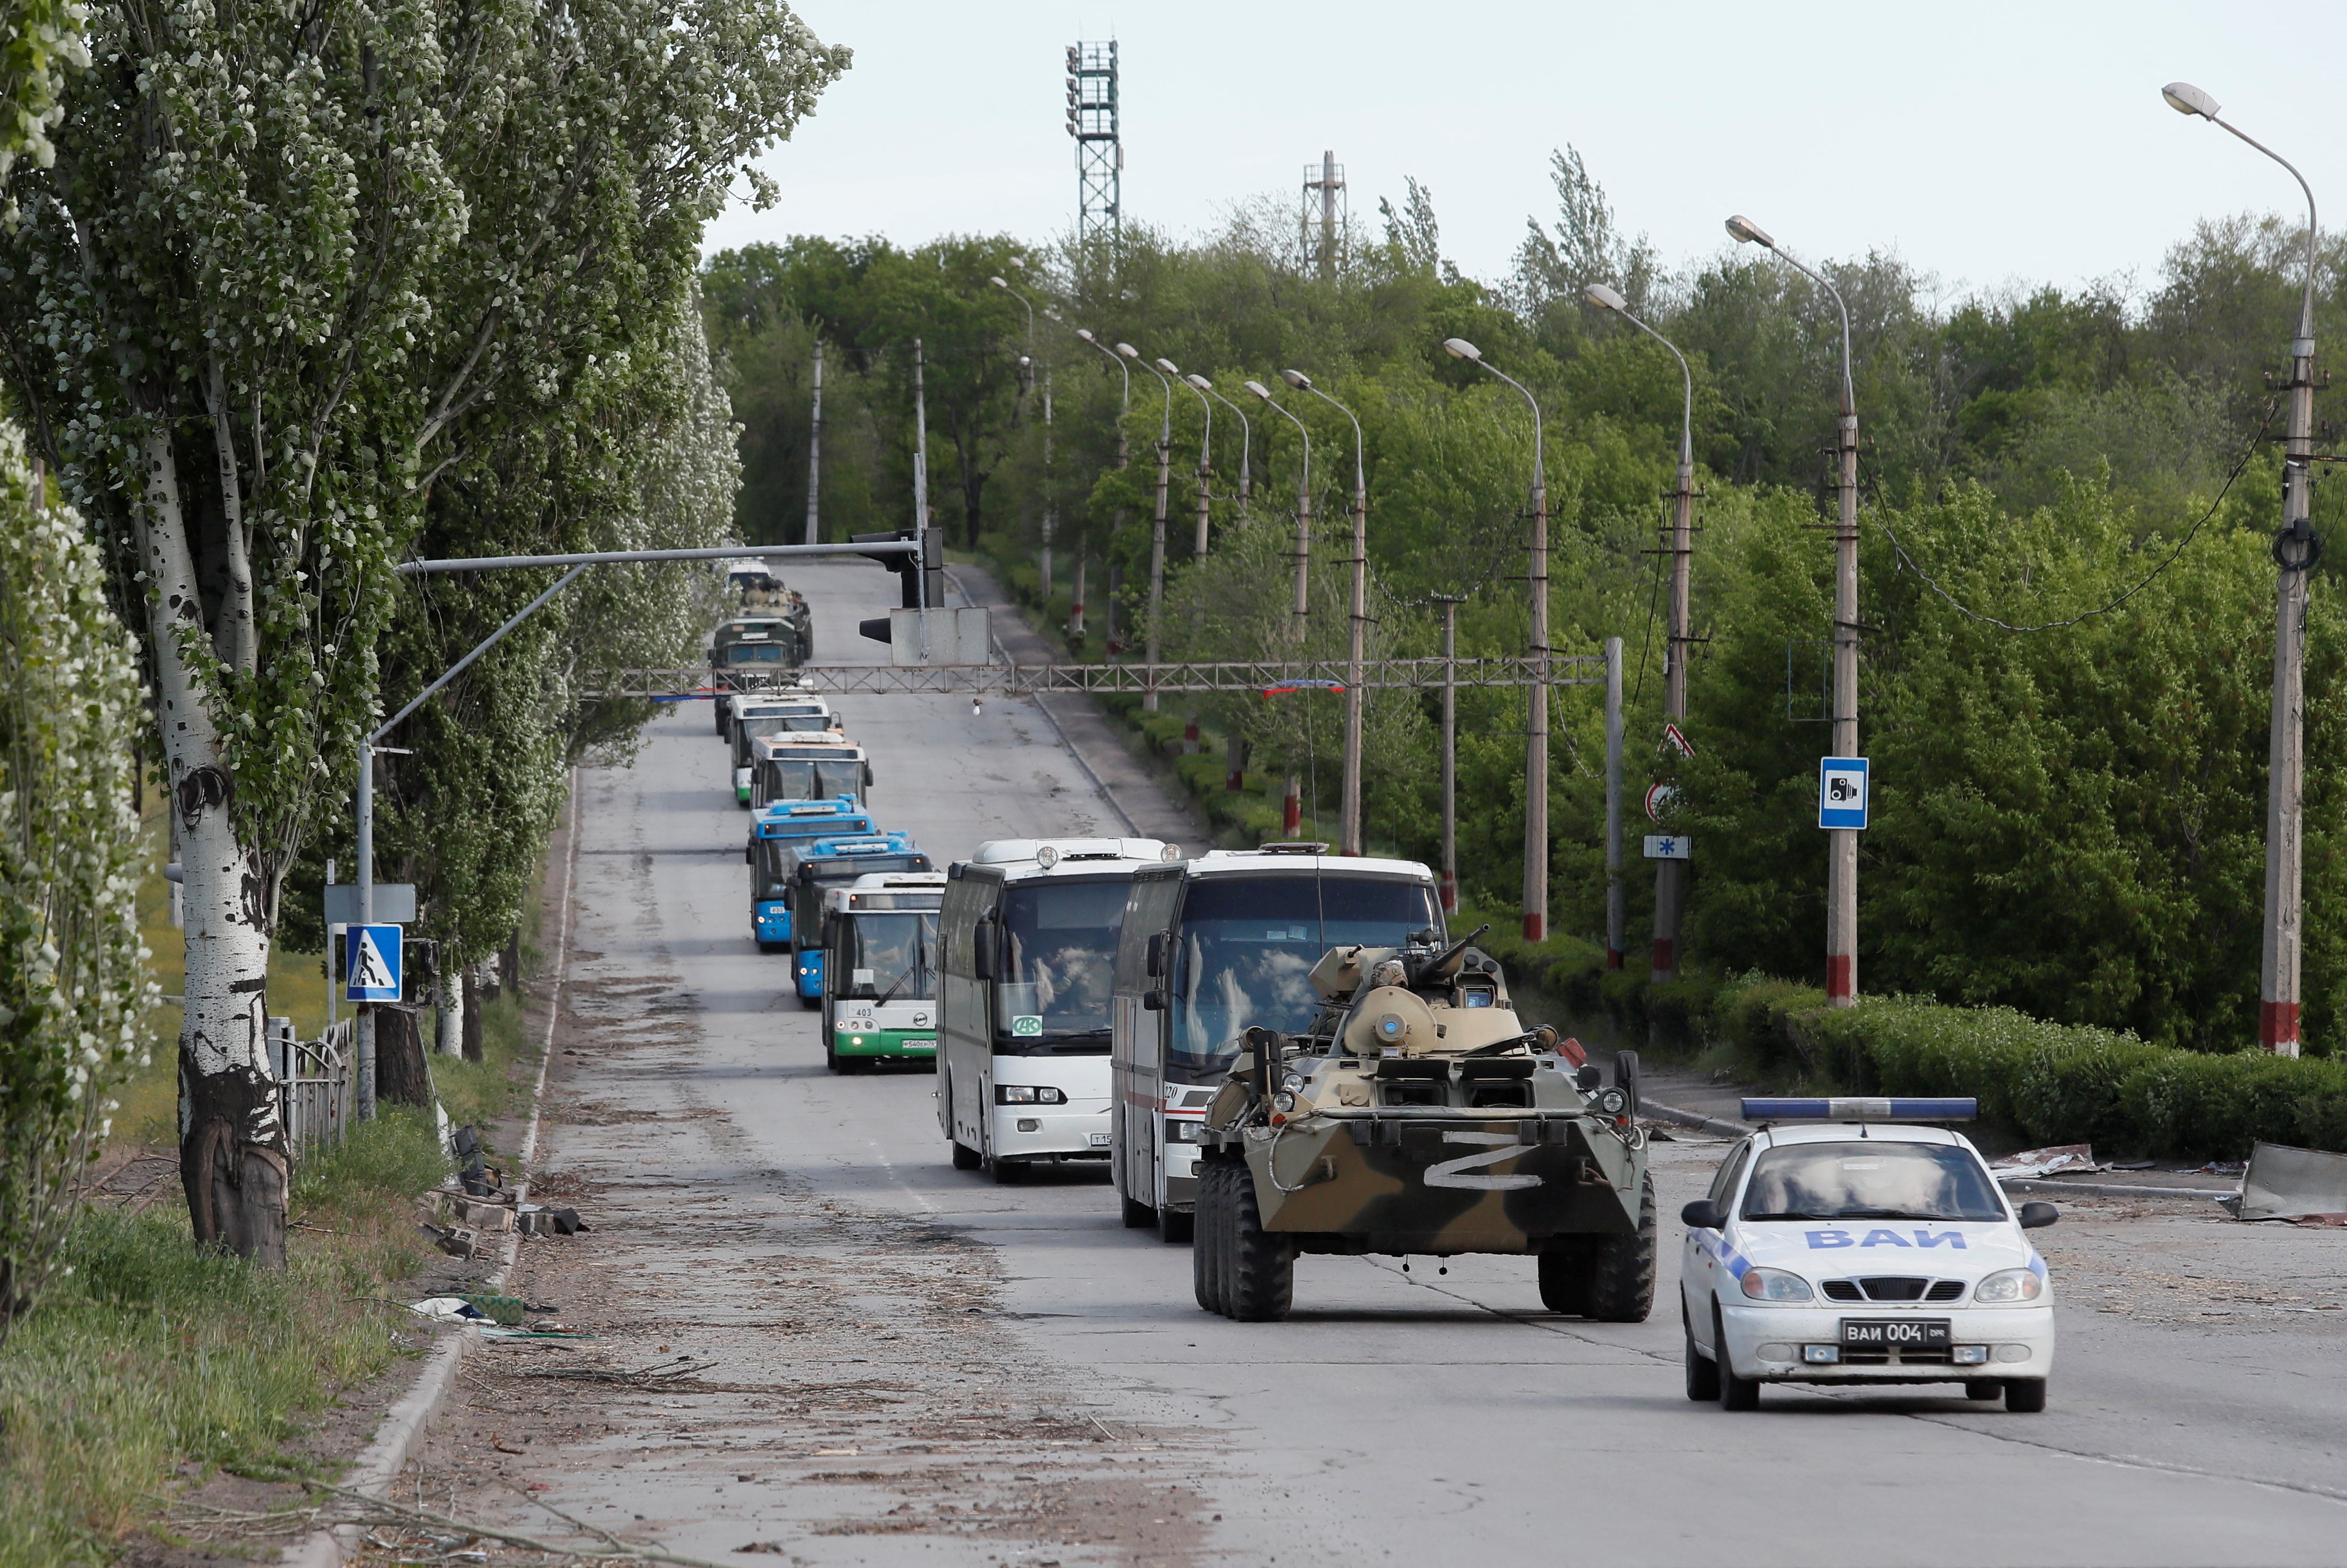 Đoàn xe chở binh lính Ukraine rời nhà máy Azovstal ngày 17/5. Ảnh: Reuters.